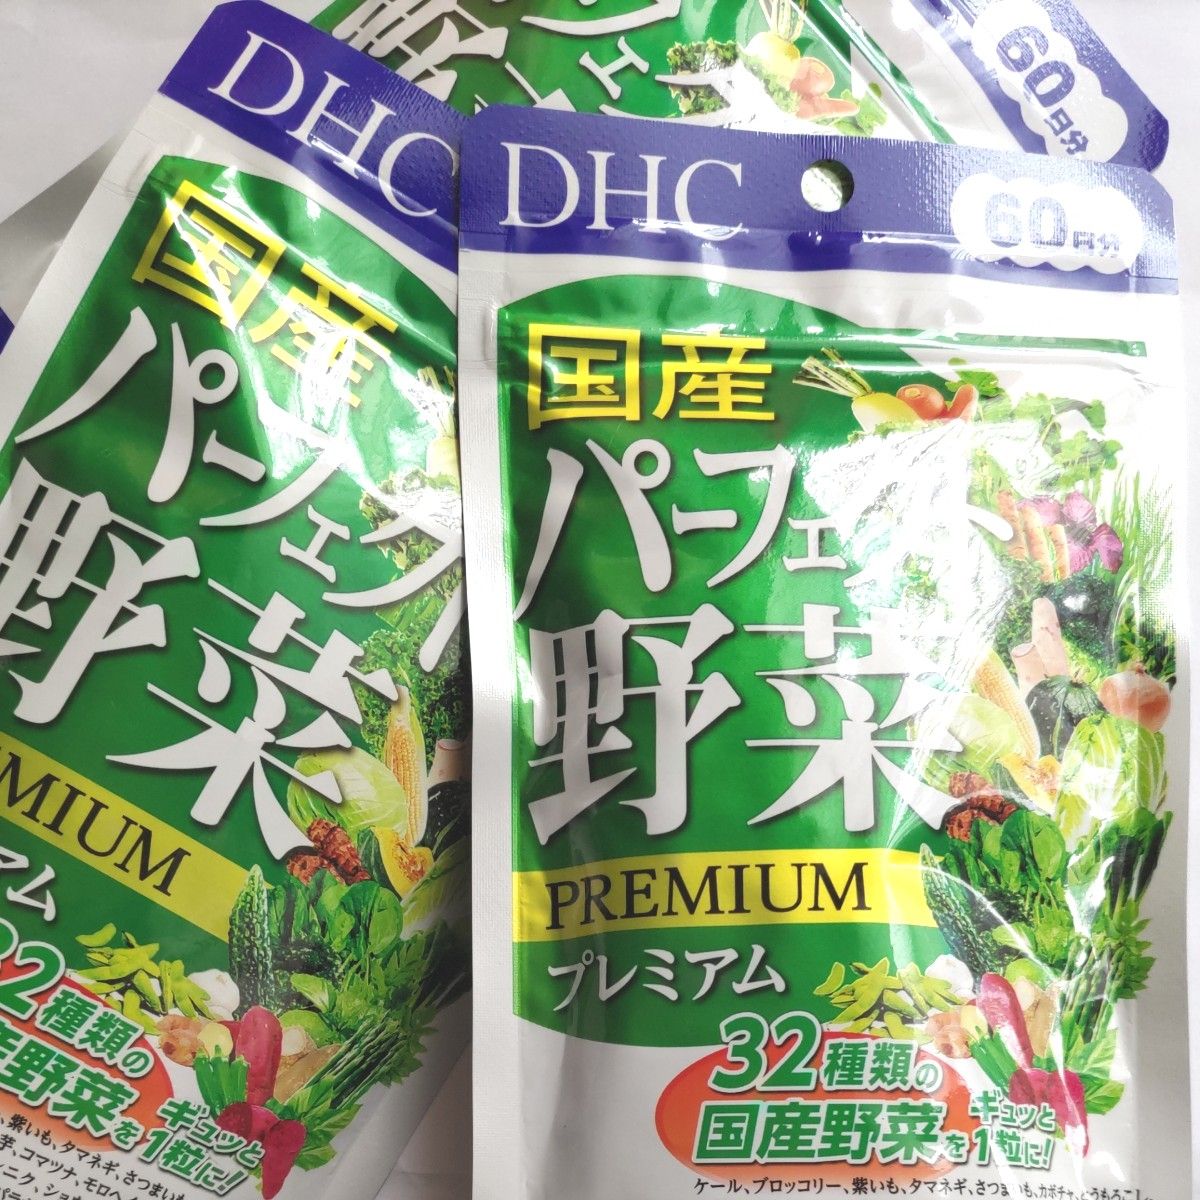 DHC 国産パーフェクト野菜プレミアム 60日分 32種の野菜 ビタミン ディーエイチシーサプリメント   3袋